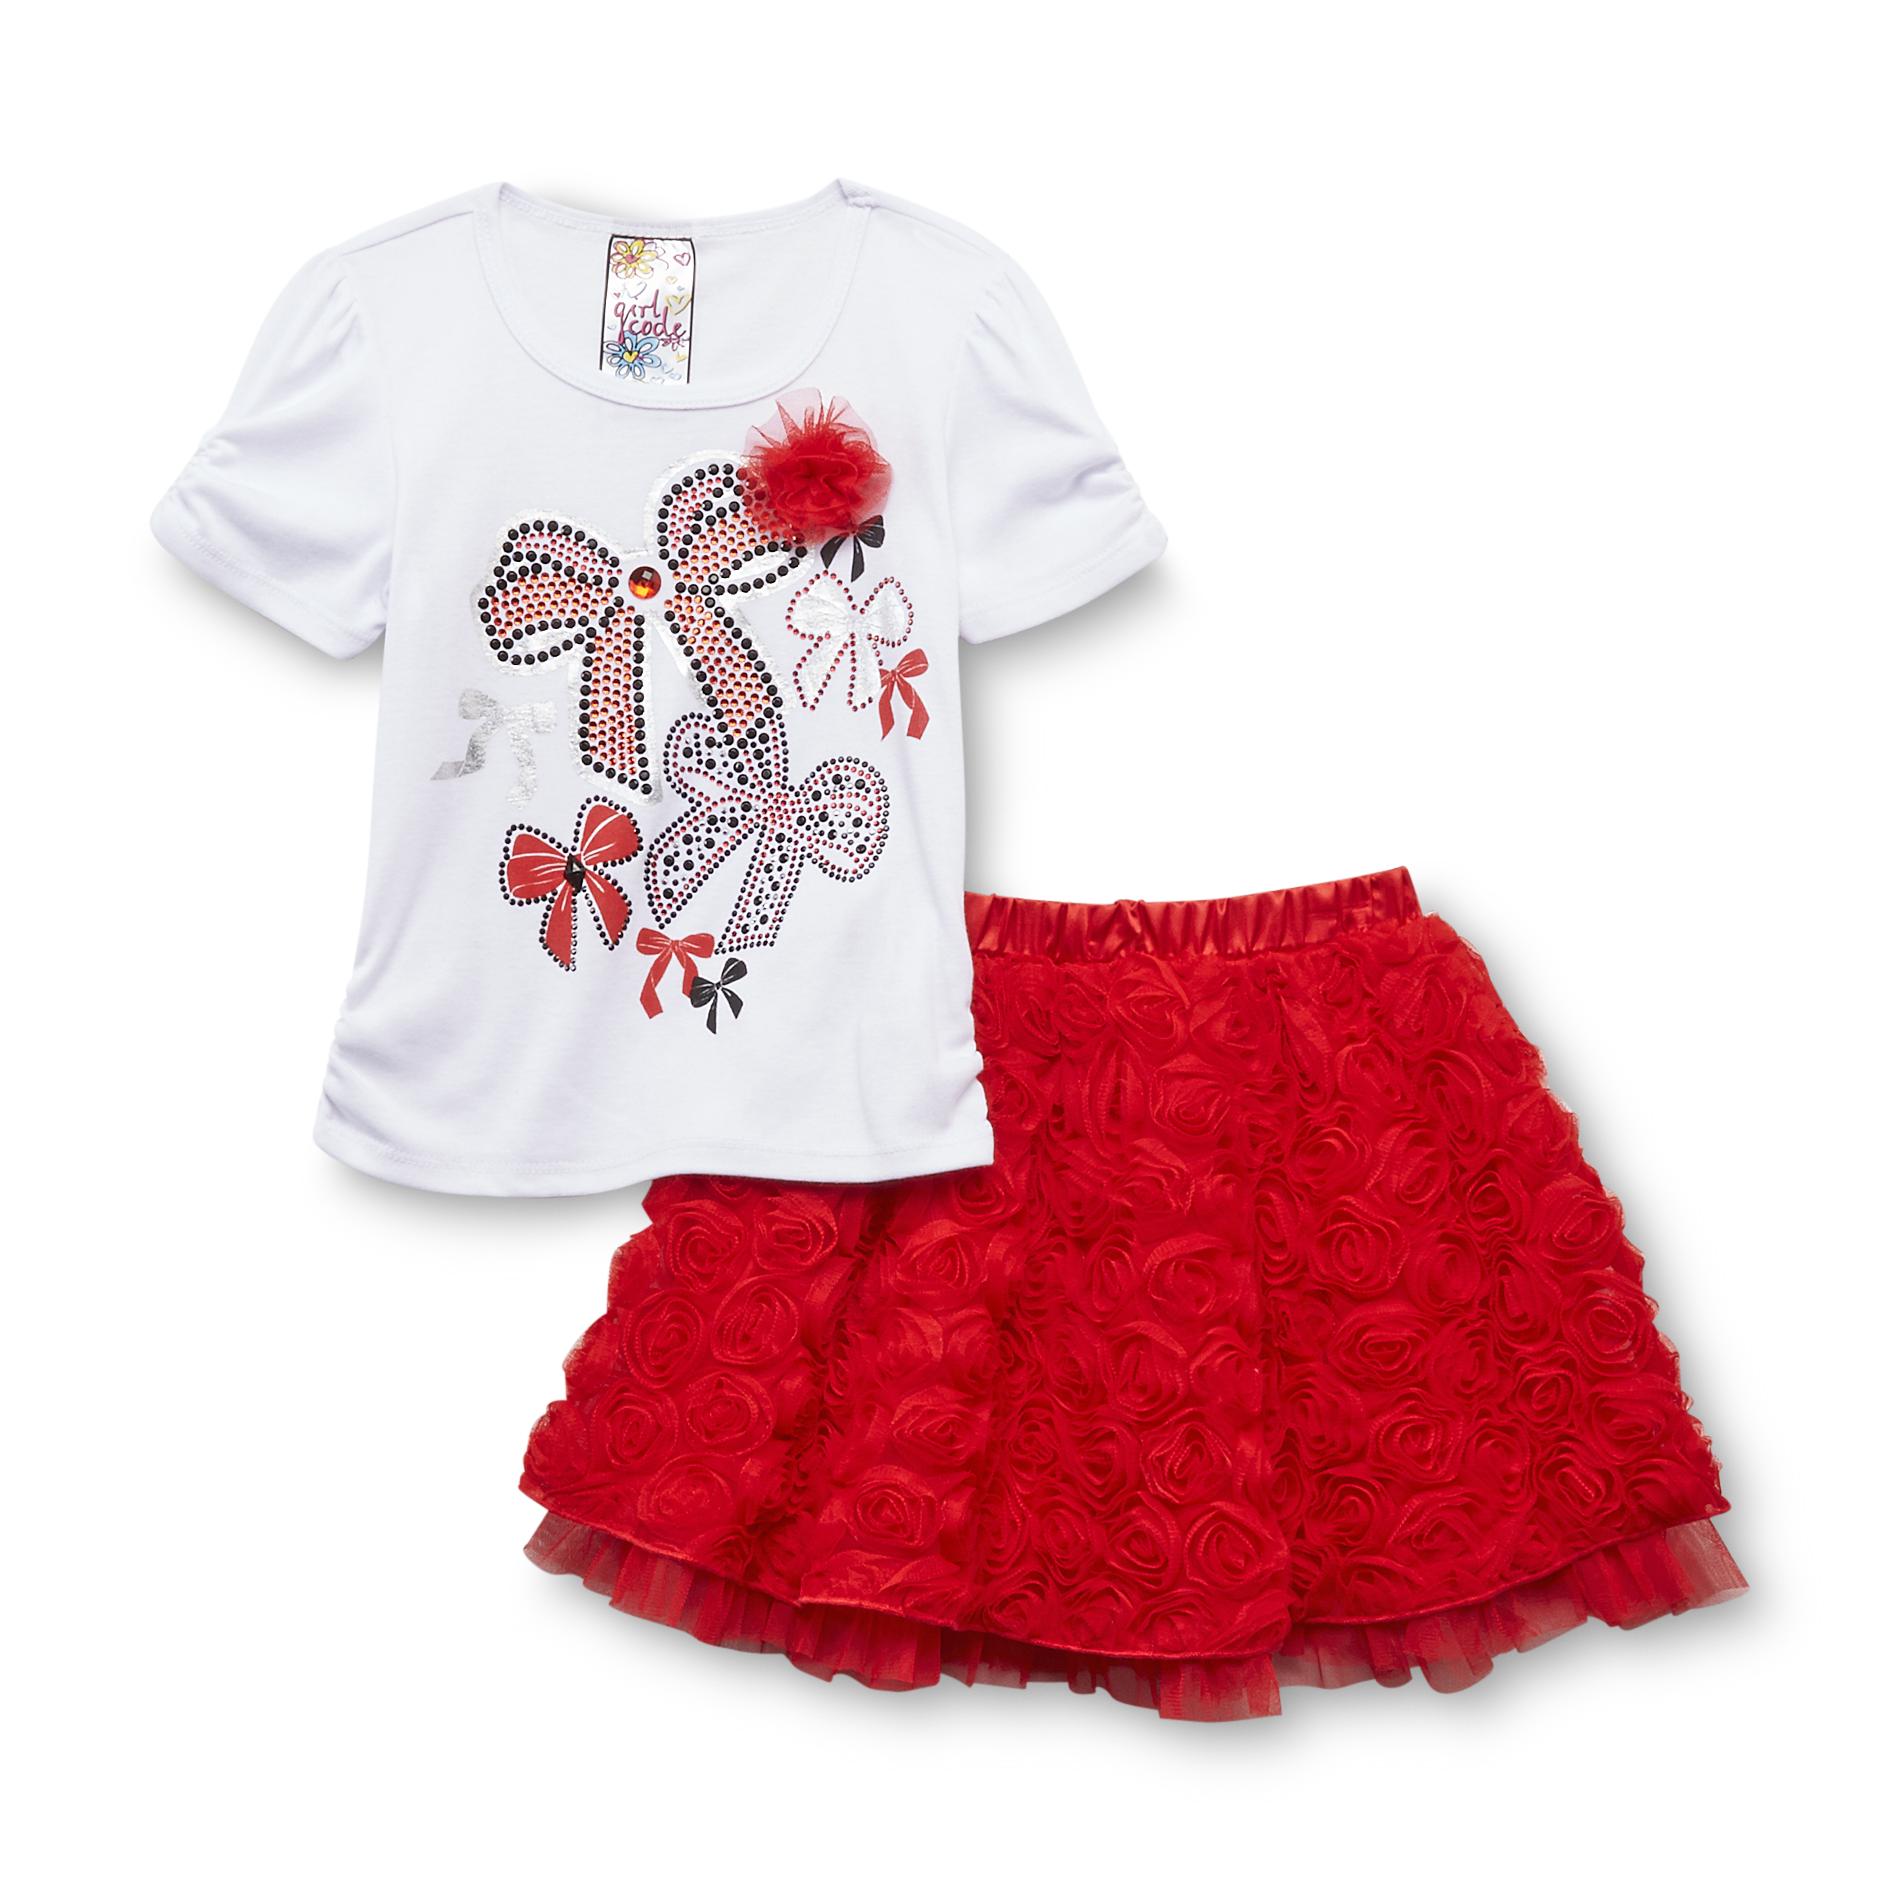 Girl Code Girl's Graphic T-Shirt & Skirt - Bows & Roses